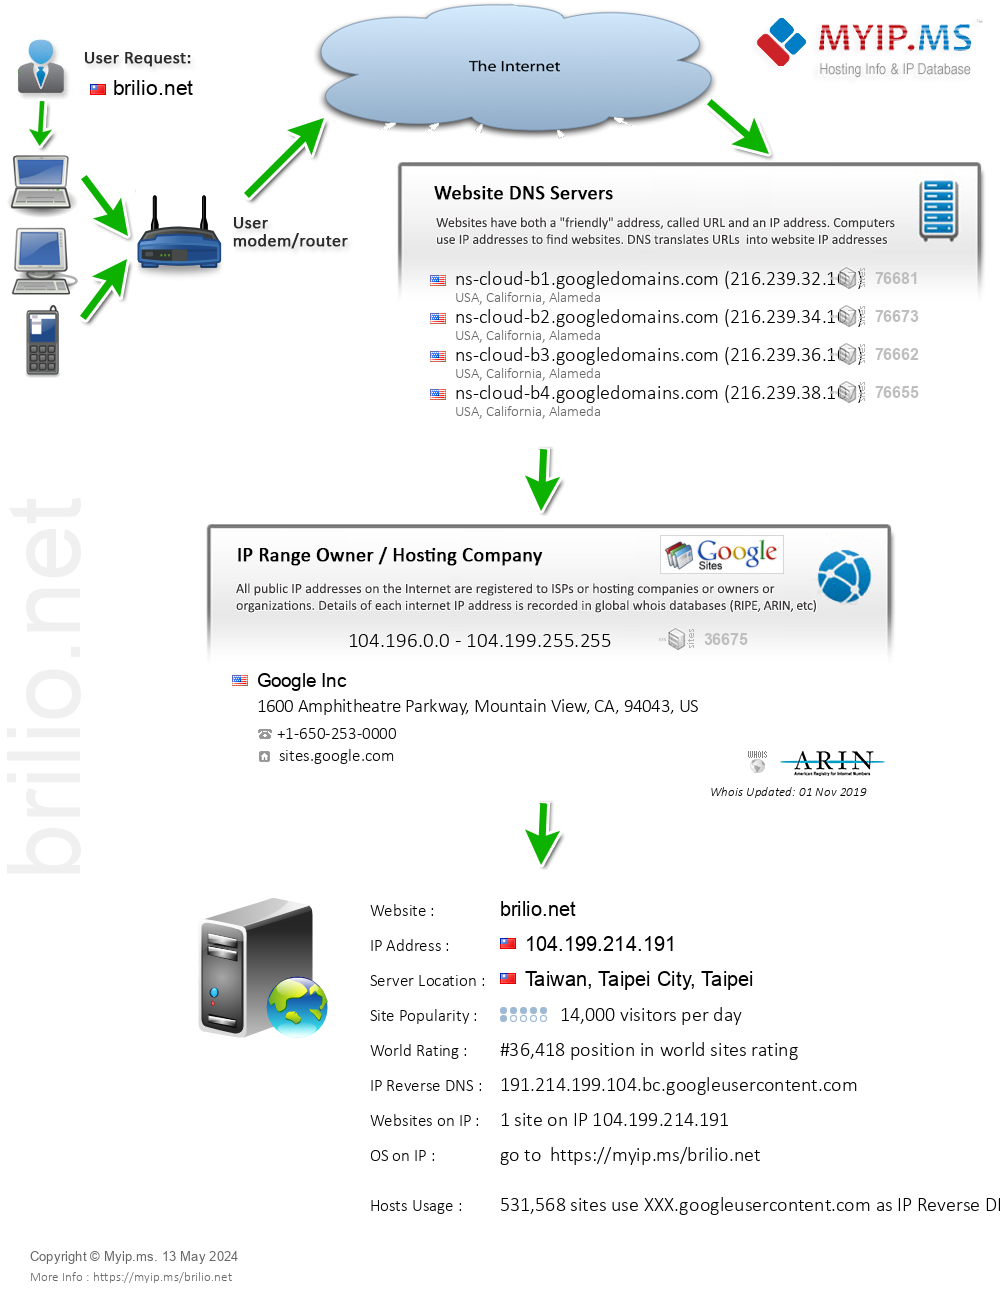 Brilio.net - Website Hosting Visual IP Diagram